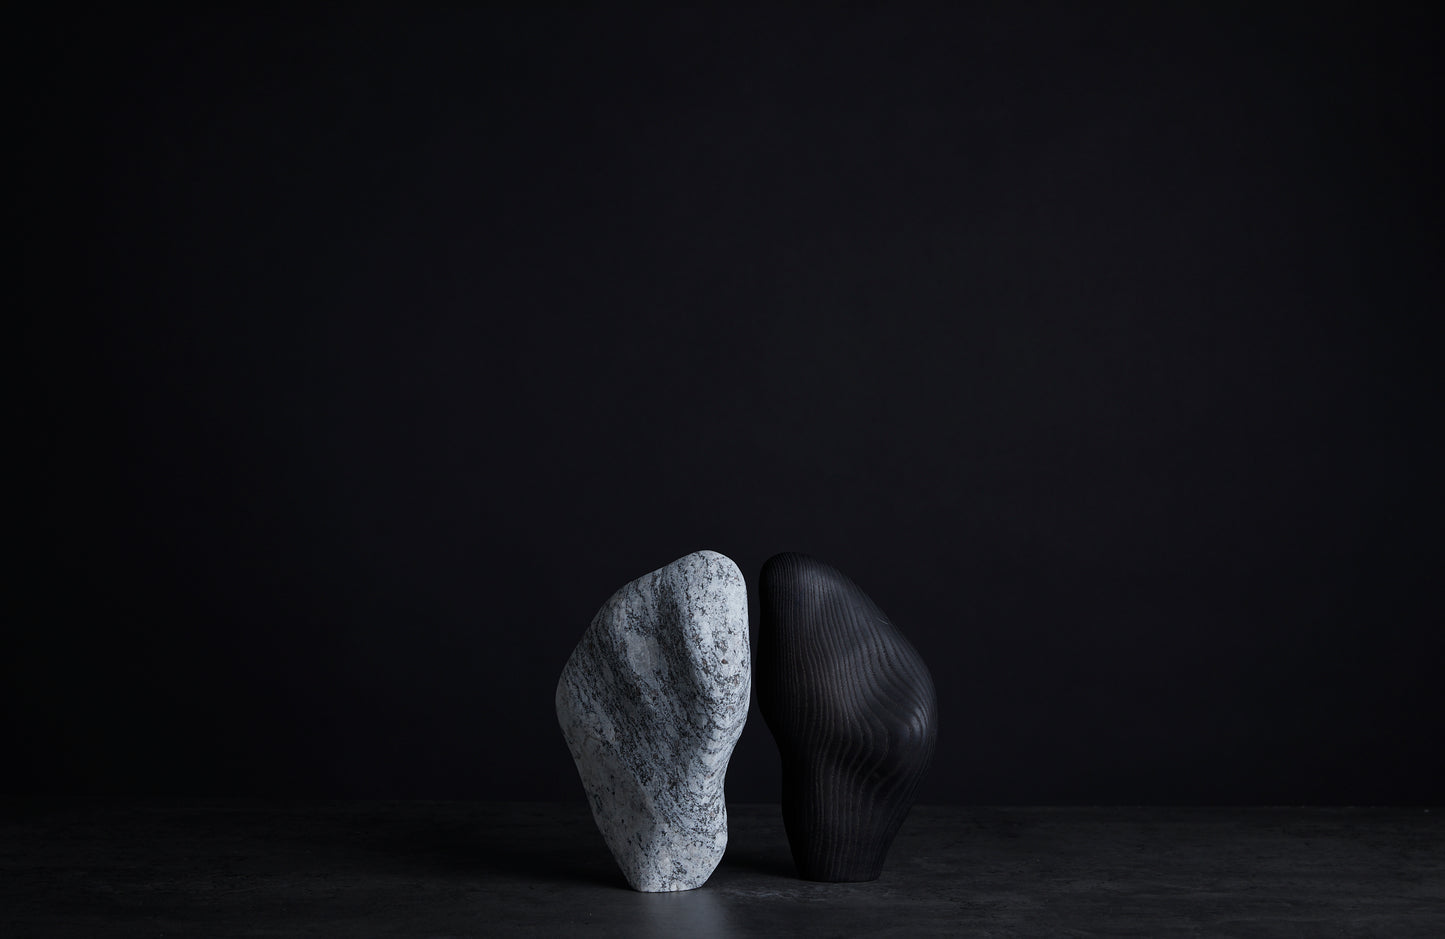 Løvfall skulptur, Bedrock and shadow